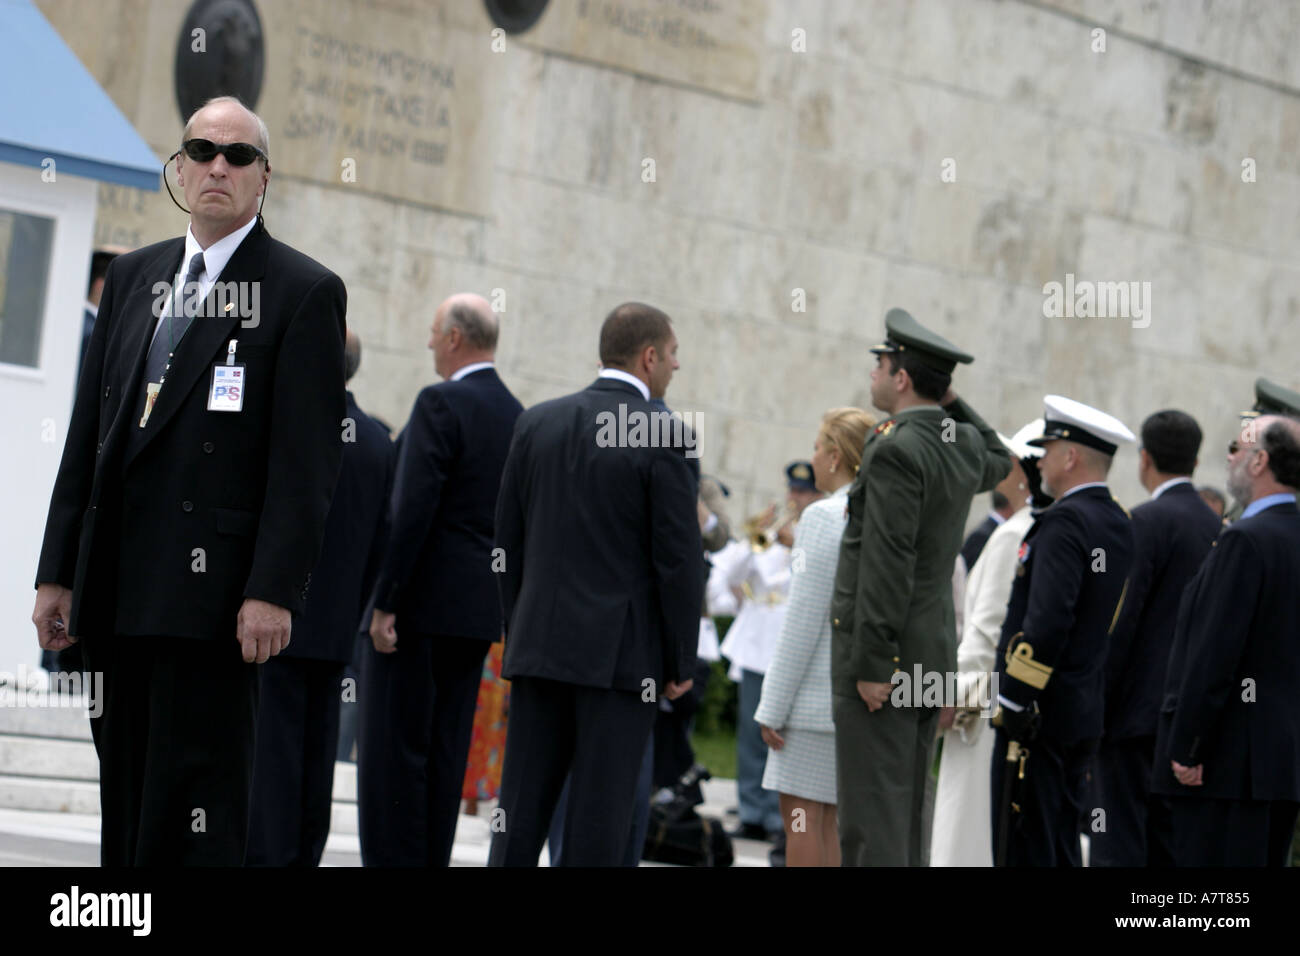 Personal de seguridad vigila una delegación extranjera en una ceremonia en la Tumba del Soldado Desconocido en la Plaza Syntagma.Atenas. Grecia Foto de stock